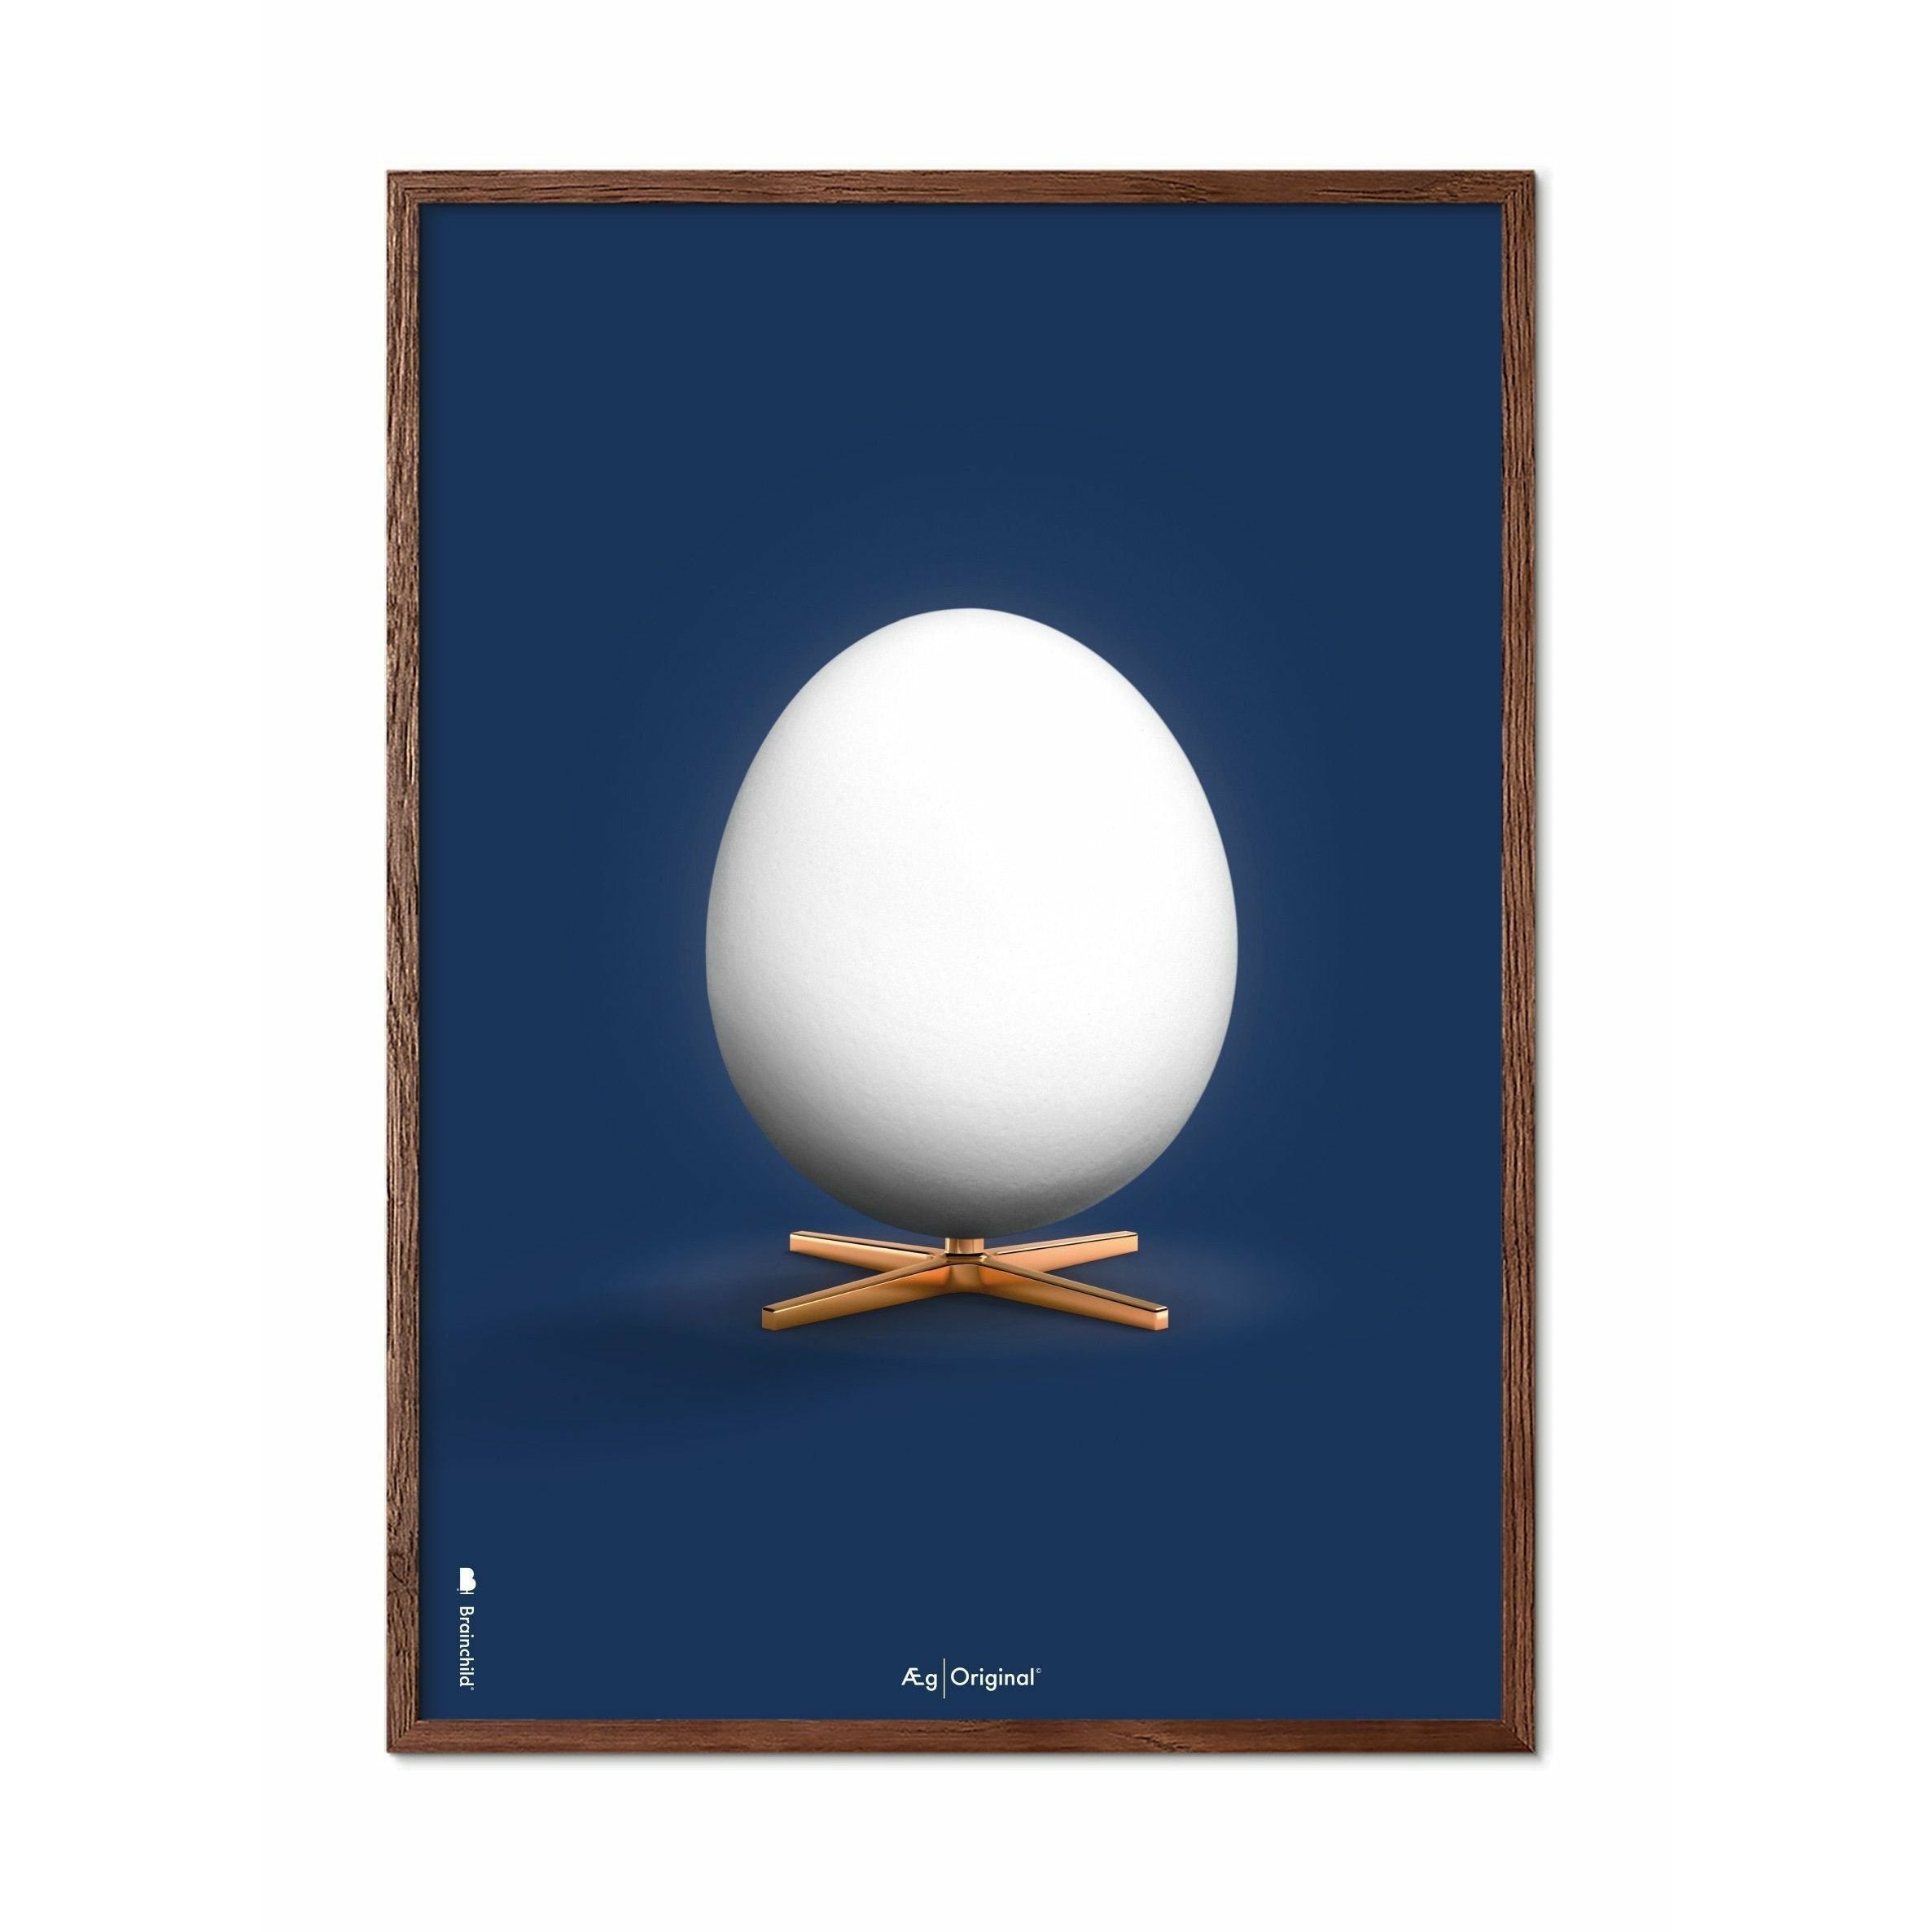 Póster clásico de huevo de creación, marco hecho de madera oscura 50x70 cm, fondo azul oscuro